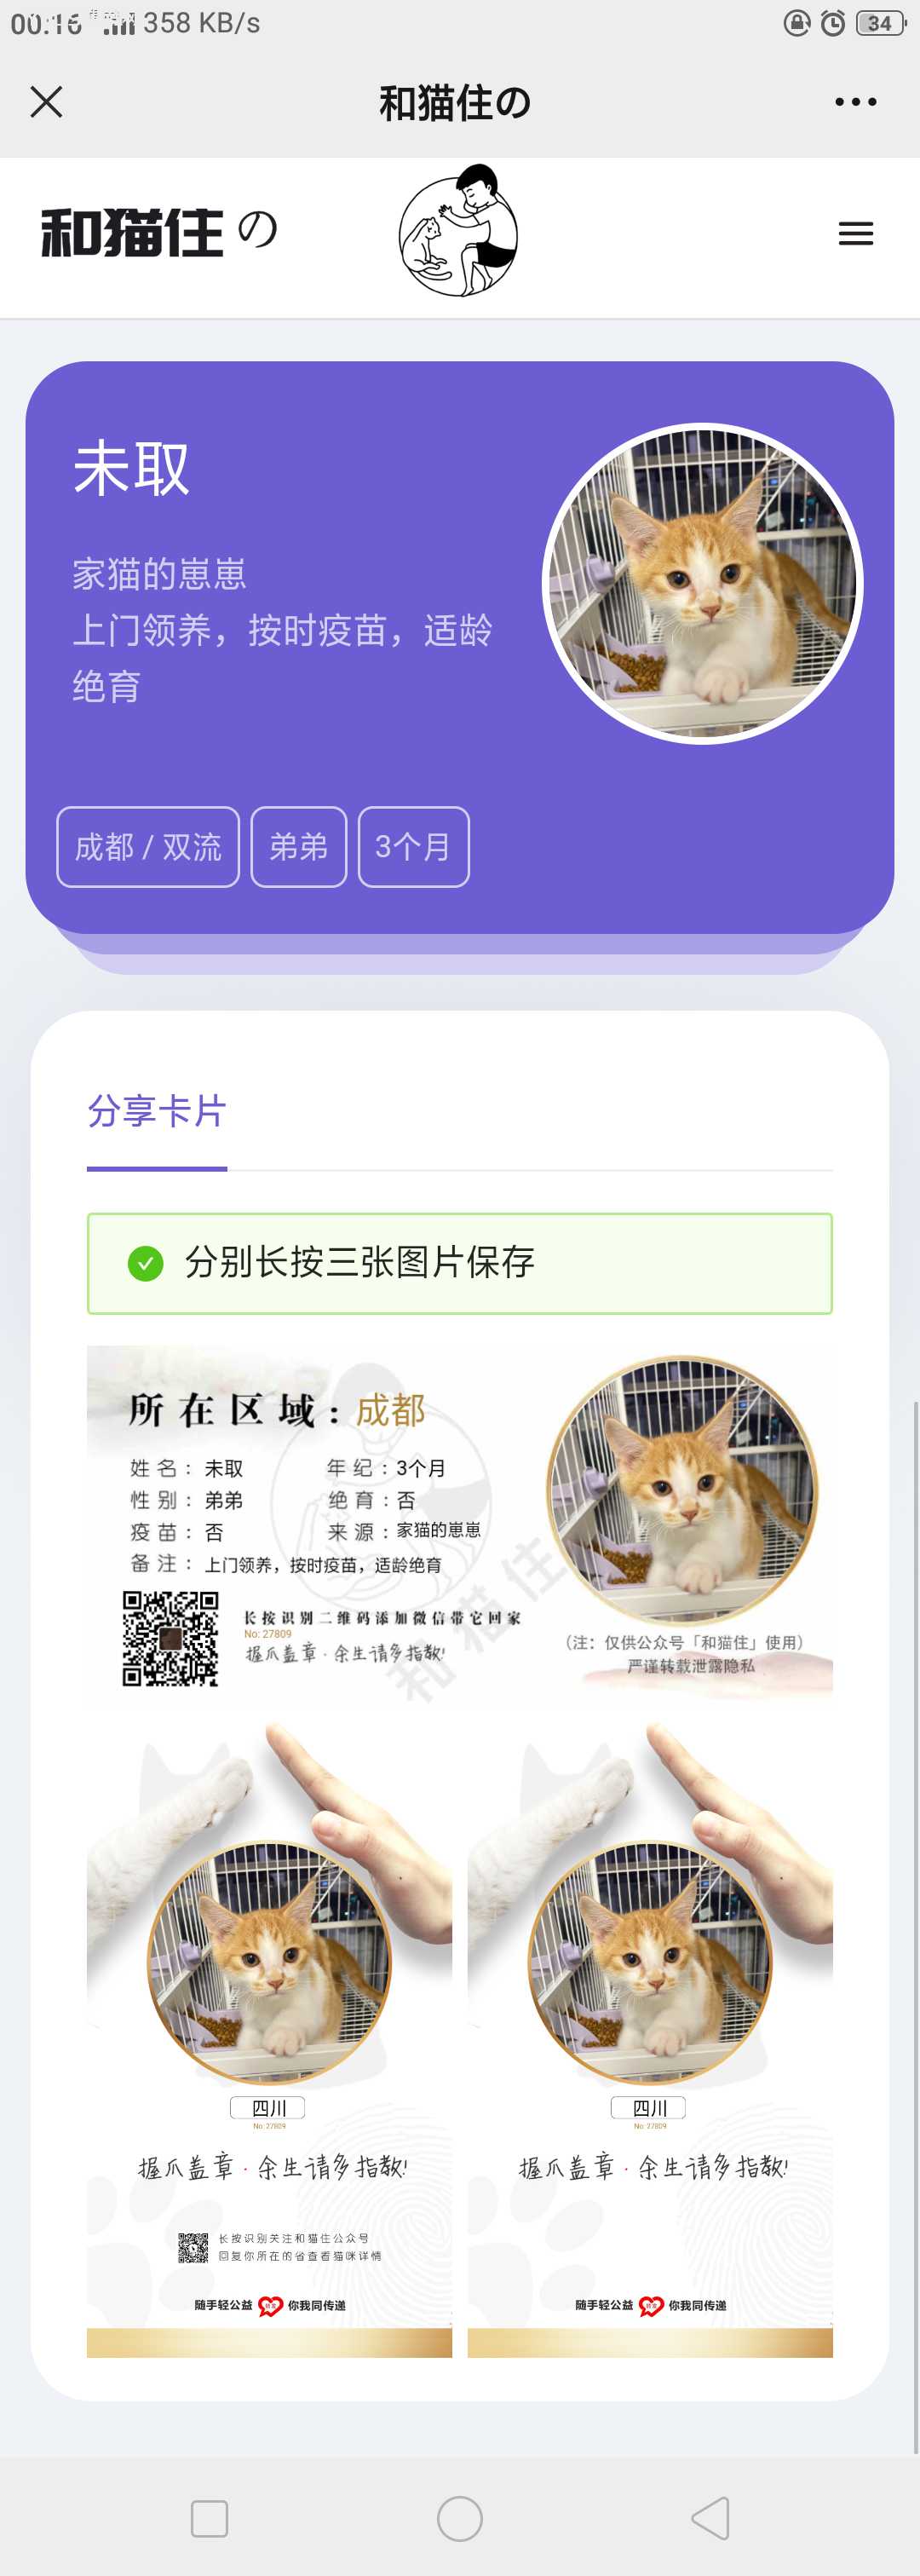 H5流浪猫流浪狗宠物领养和信息发布平台源码_为爱心点赞